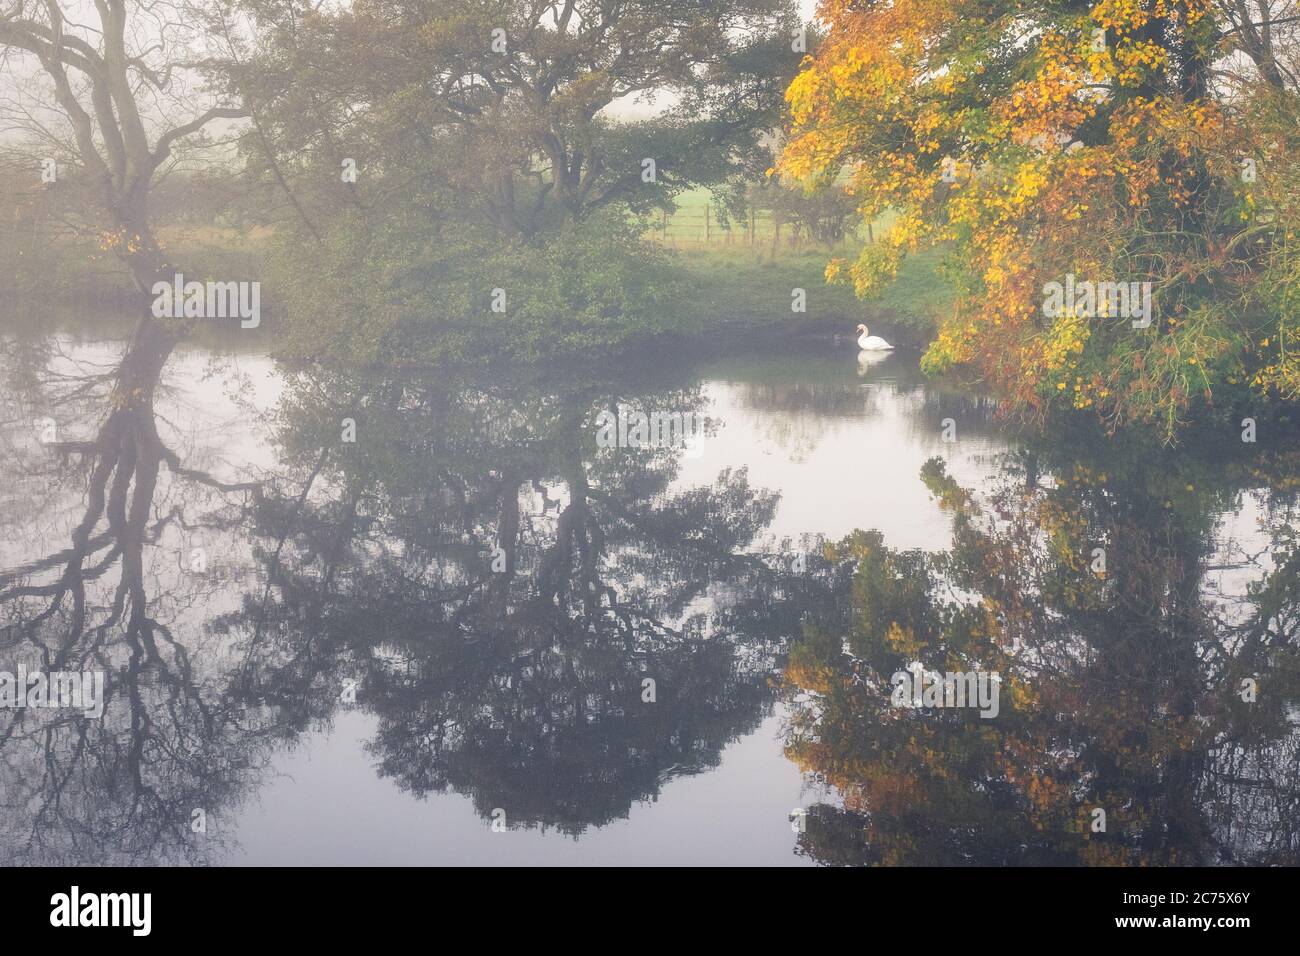 Parfait reflet d'automne sur la rivière Wharfe à Otley, dans le Yorkshire, alors qu'un cygne est assis dans les murales tranquilles du côté de la rivière. Banque D'Images